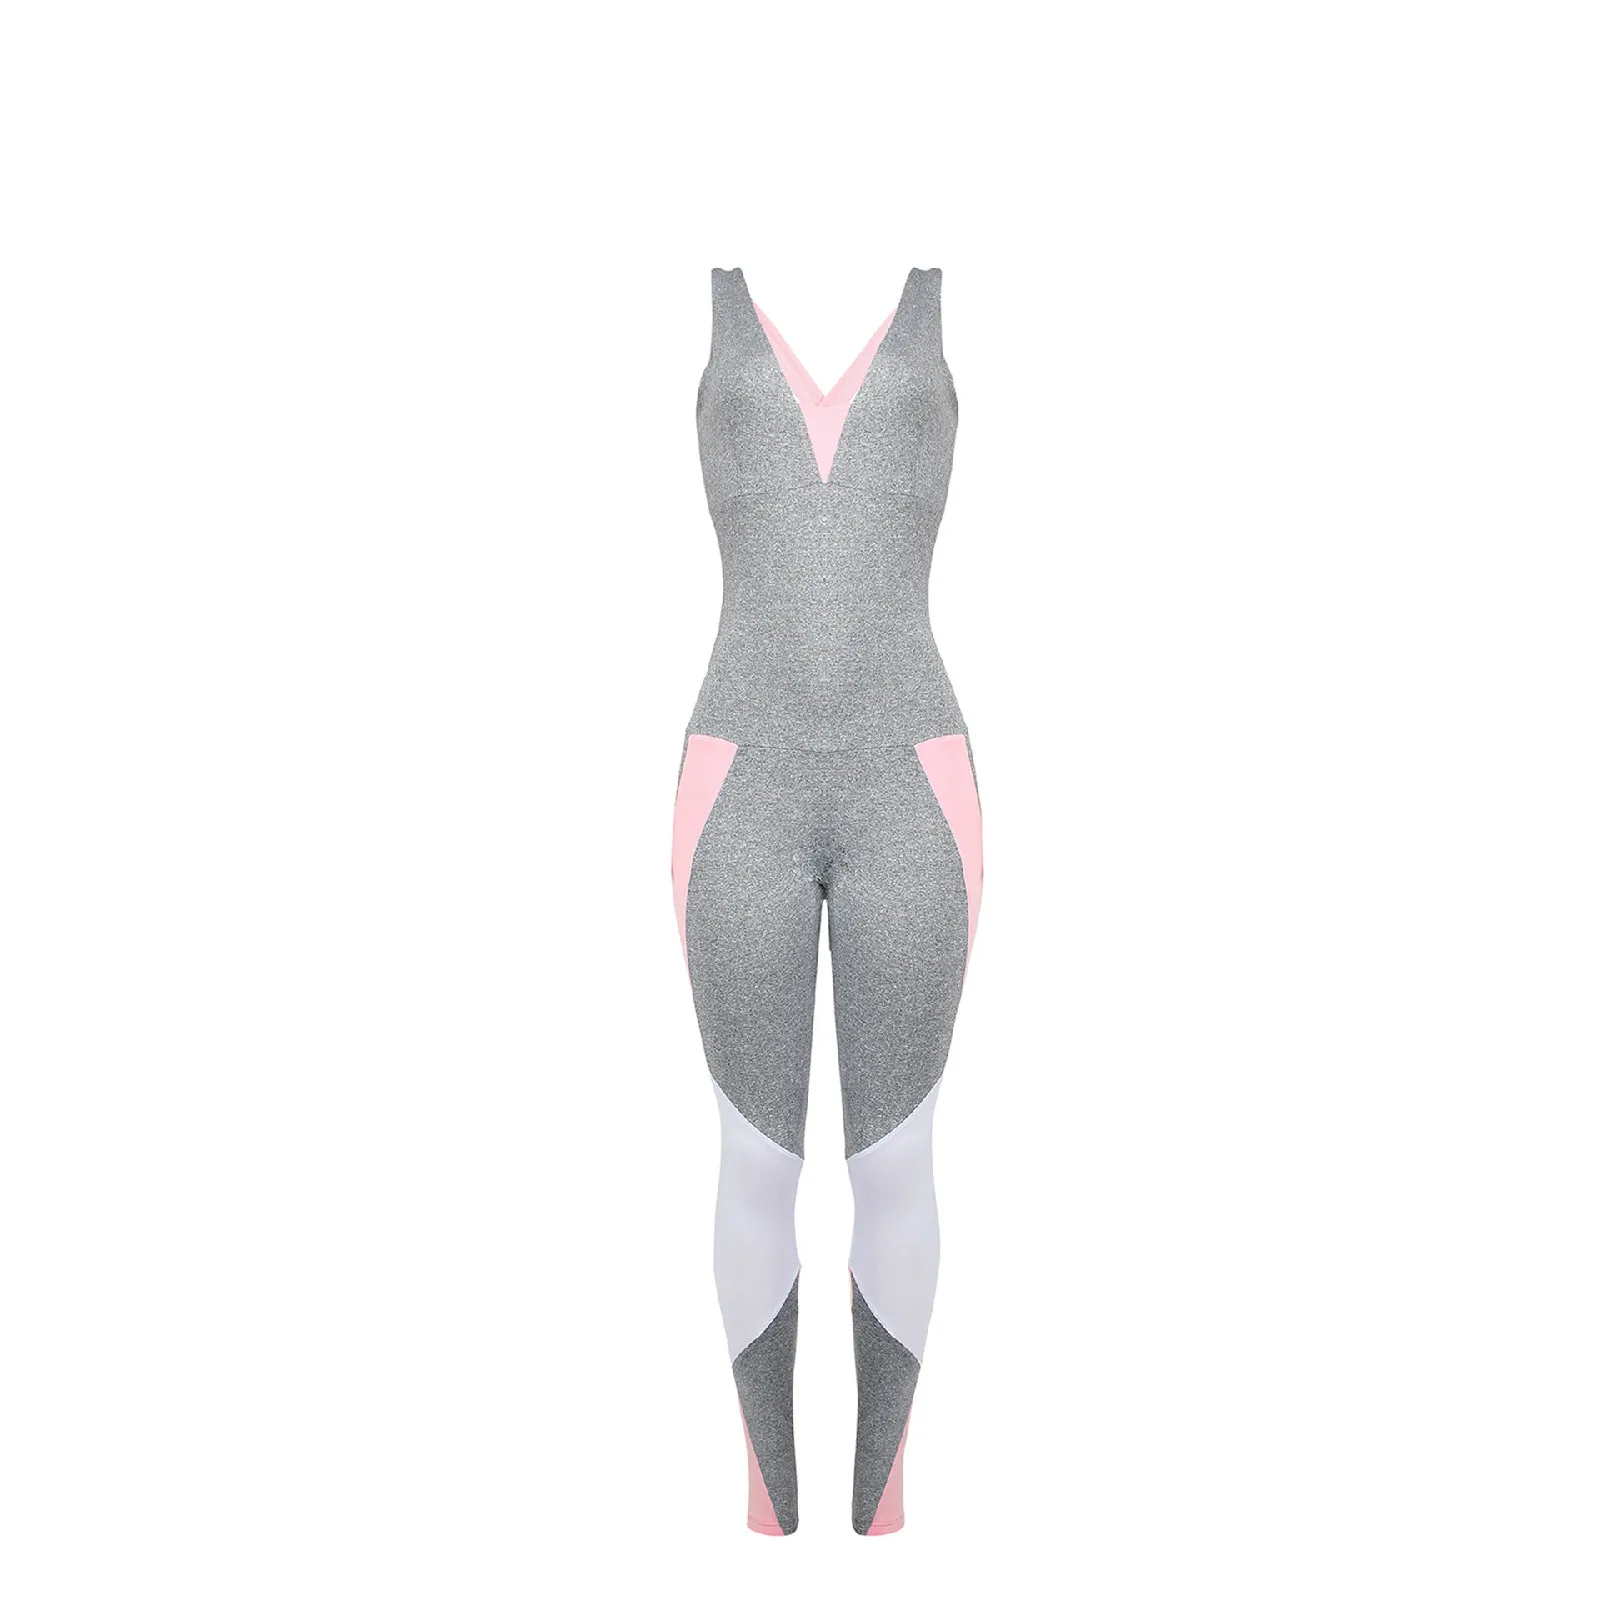 GXQIL, спортивный женский комбинезон, спортивная одежда для йоги, бега, комплект для фитнеса, женский спортивный костюм, спортивный костюм, одежда для спортзала, спортивные комбинезоны XL - Цвет: Серый